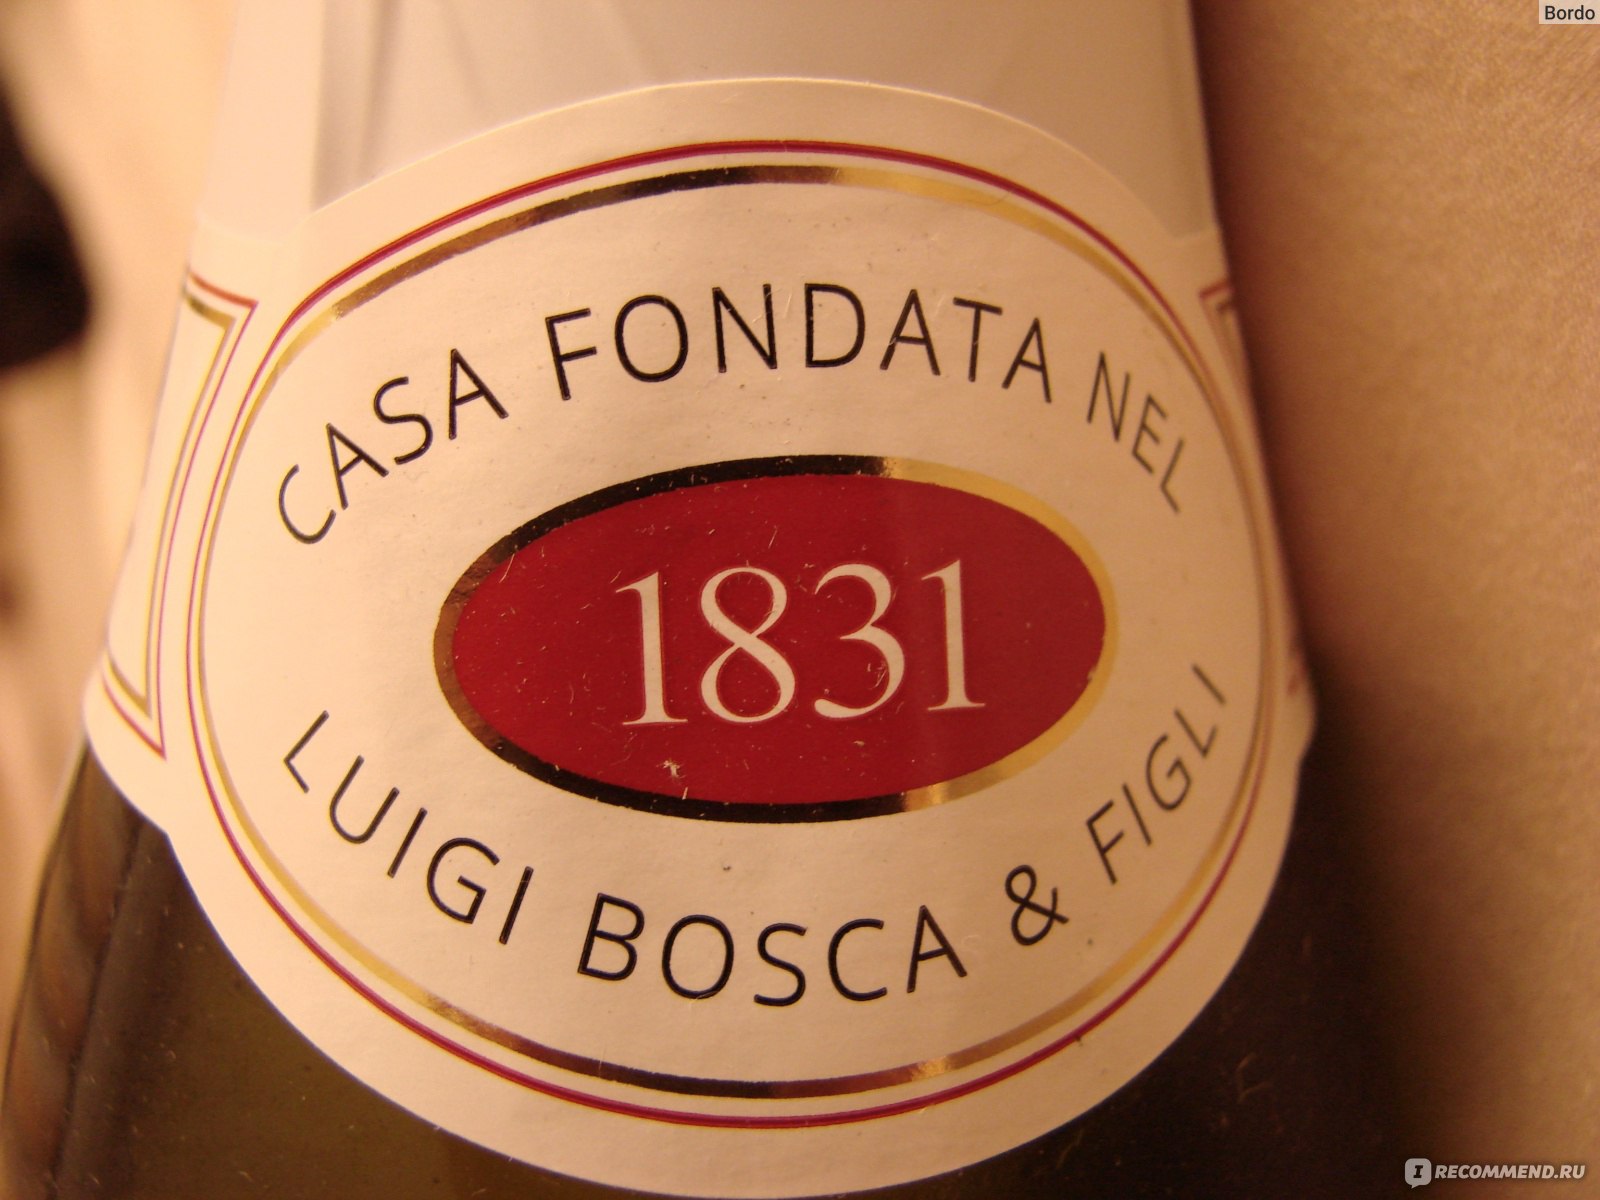 Боско безалкогольное. Bosca Prosecco. Напиток Bosca белый полусладкий. Вино игристое сладкое Bosca Bosca. Игристое вино Боско белое полусладкое.